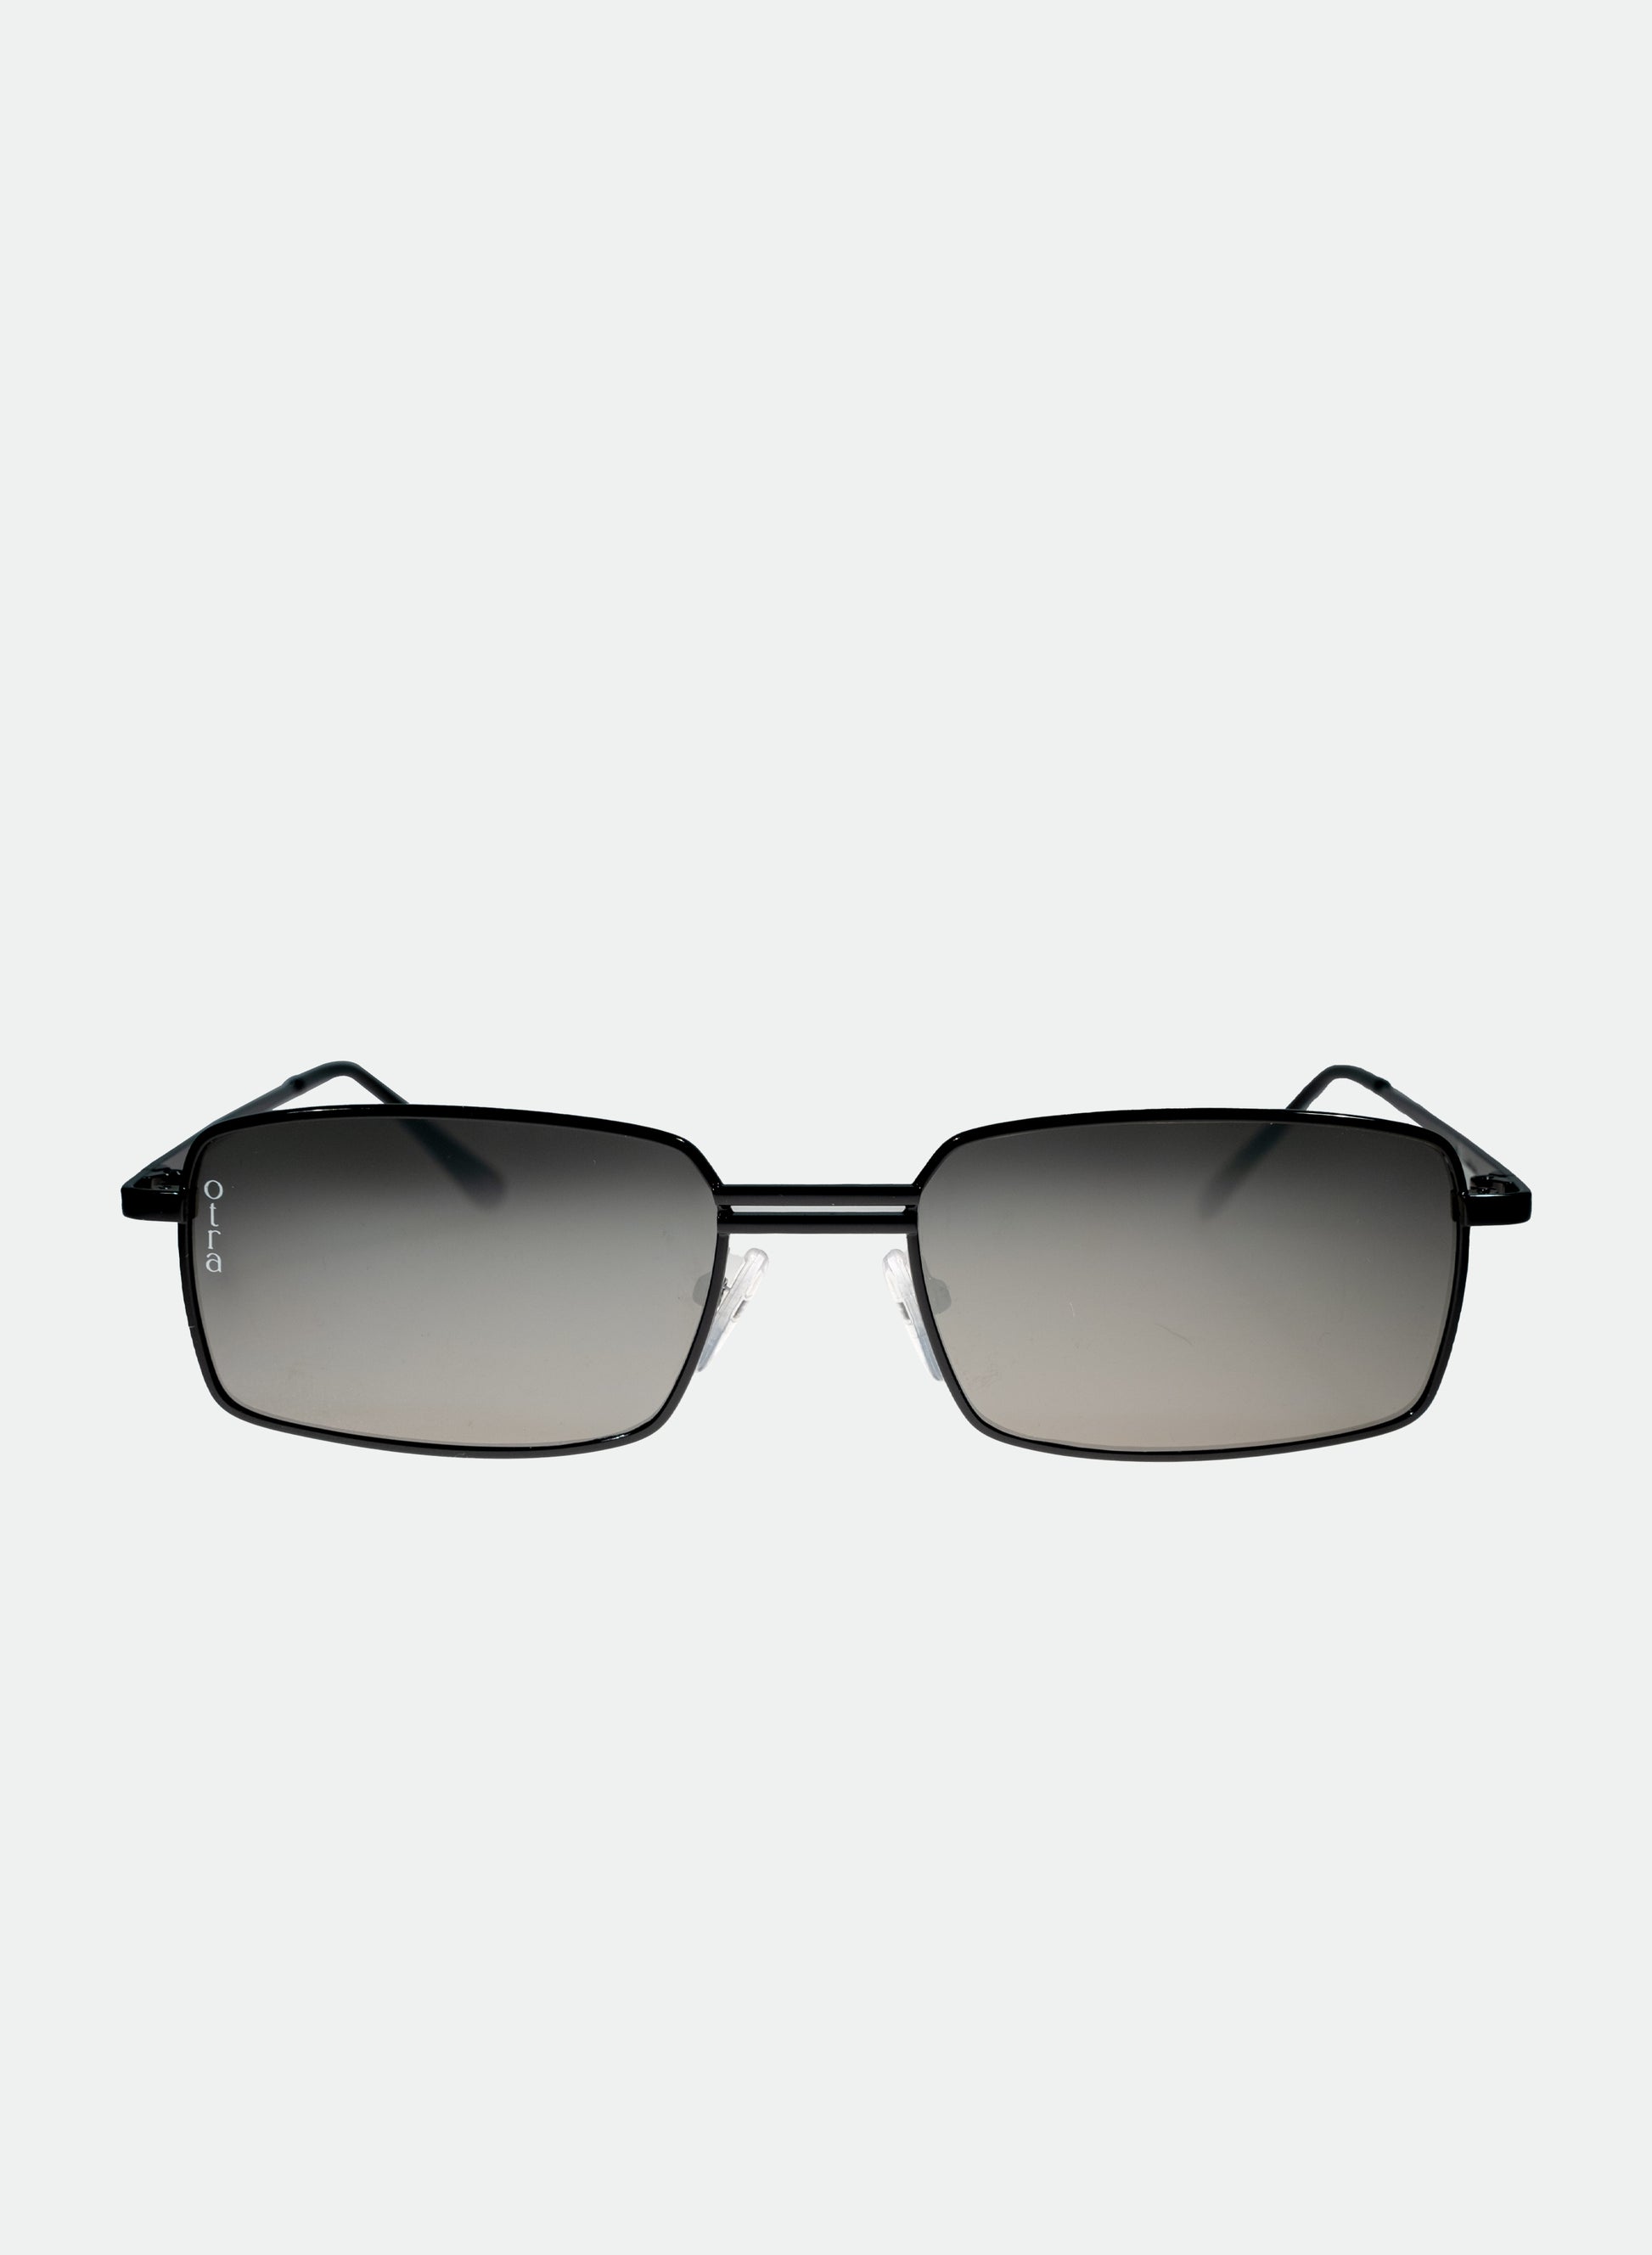 Ila small rectangle sunglasses in black